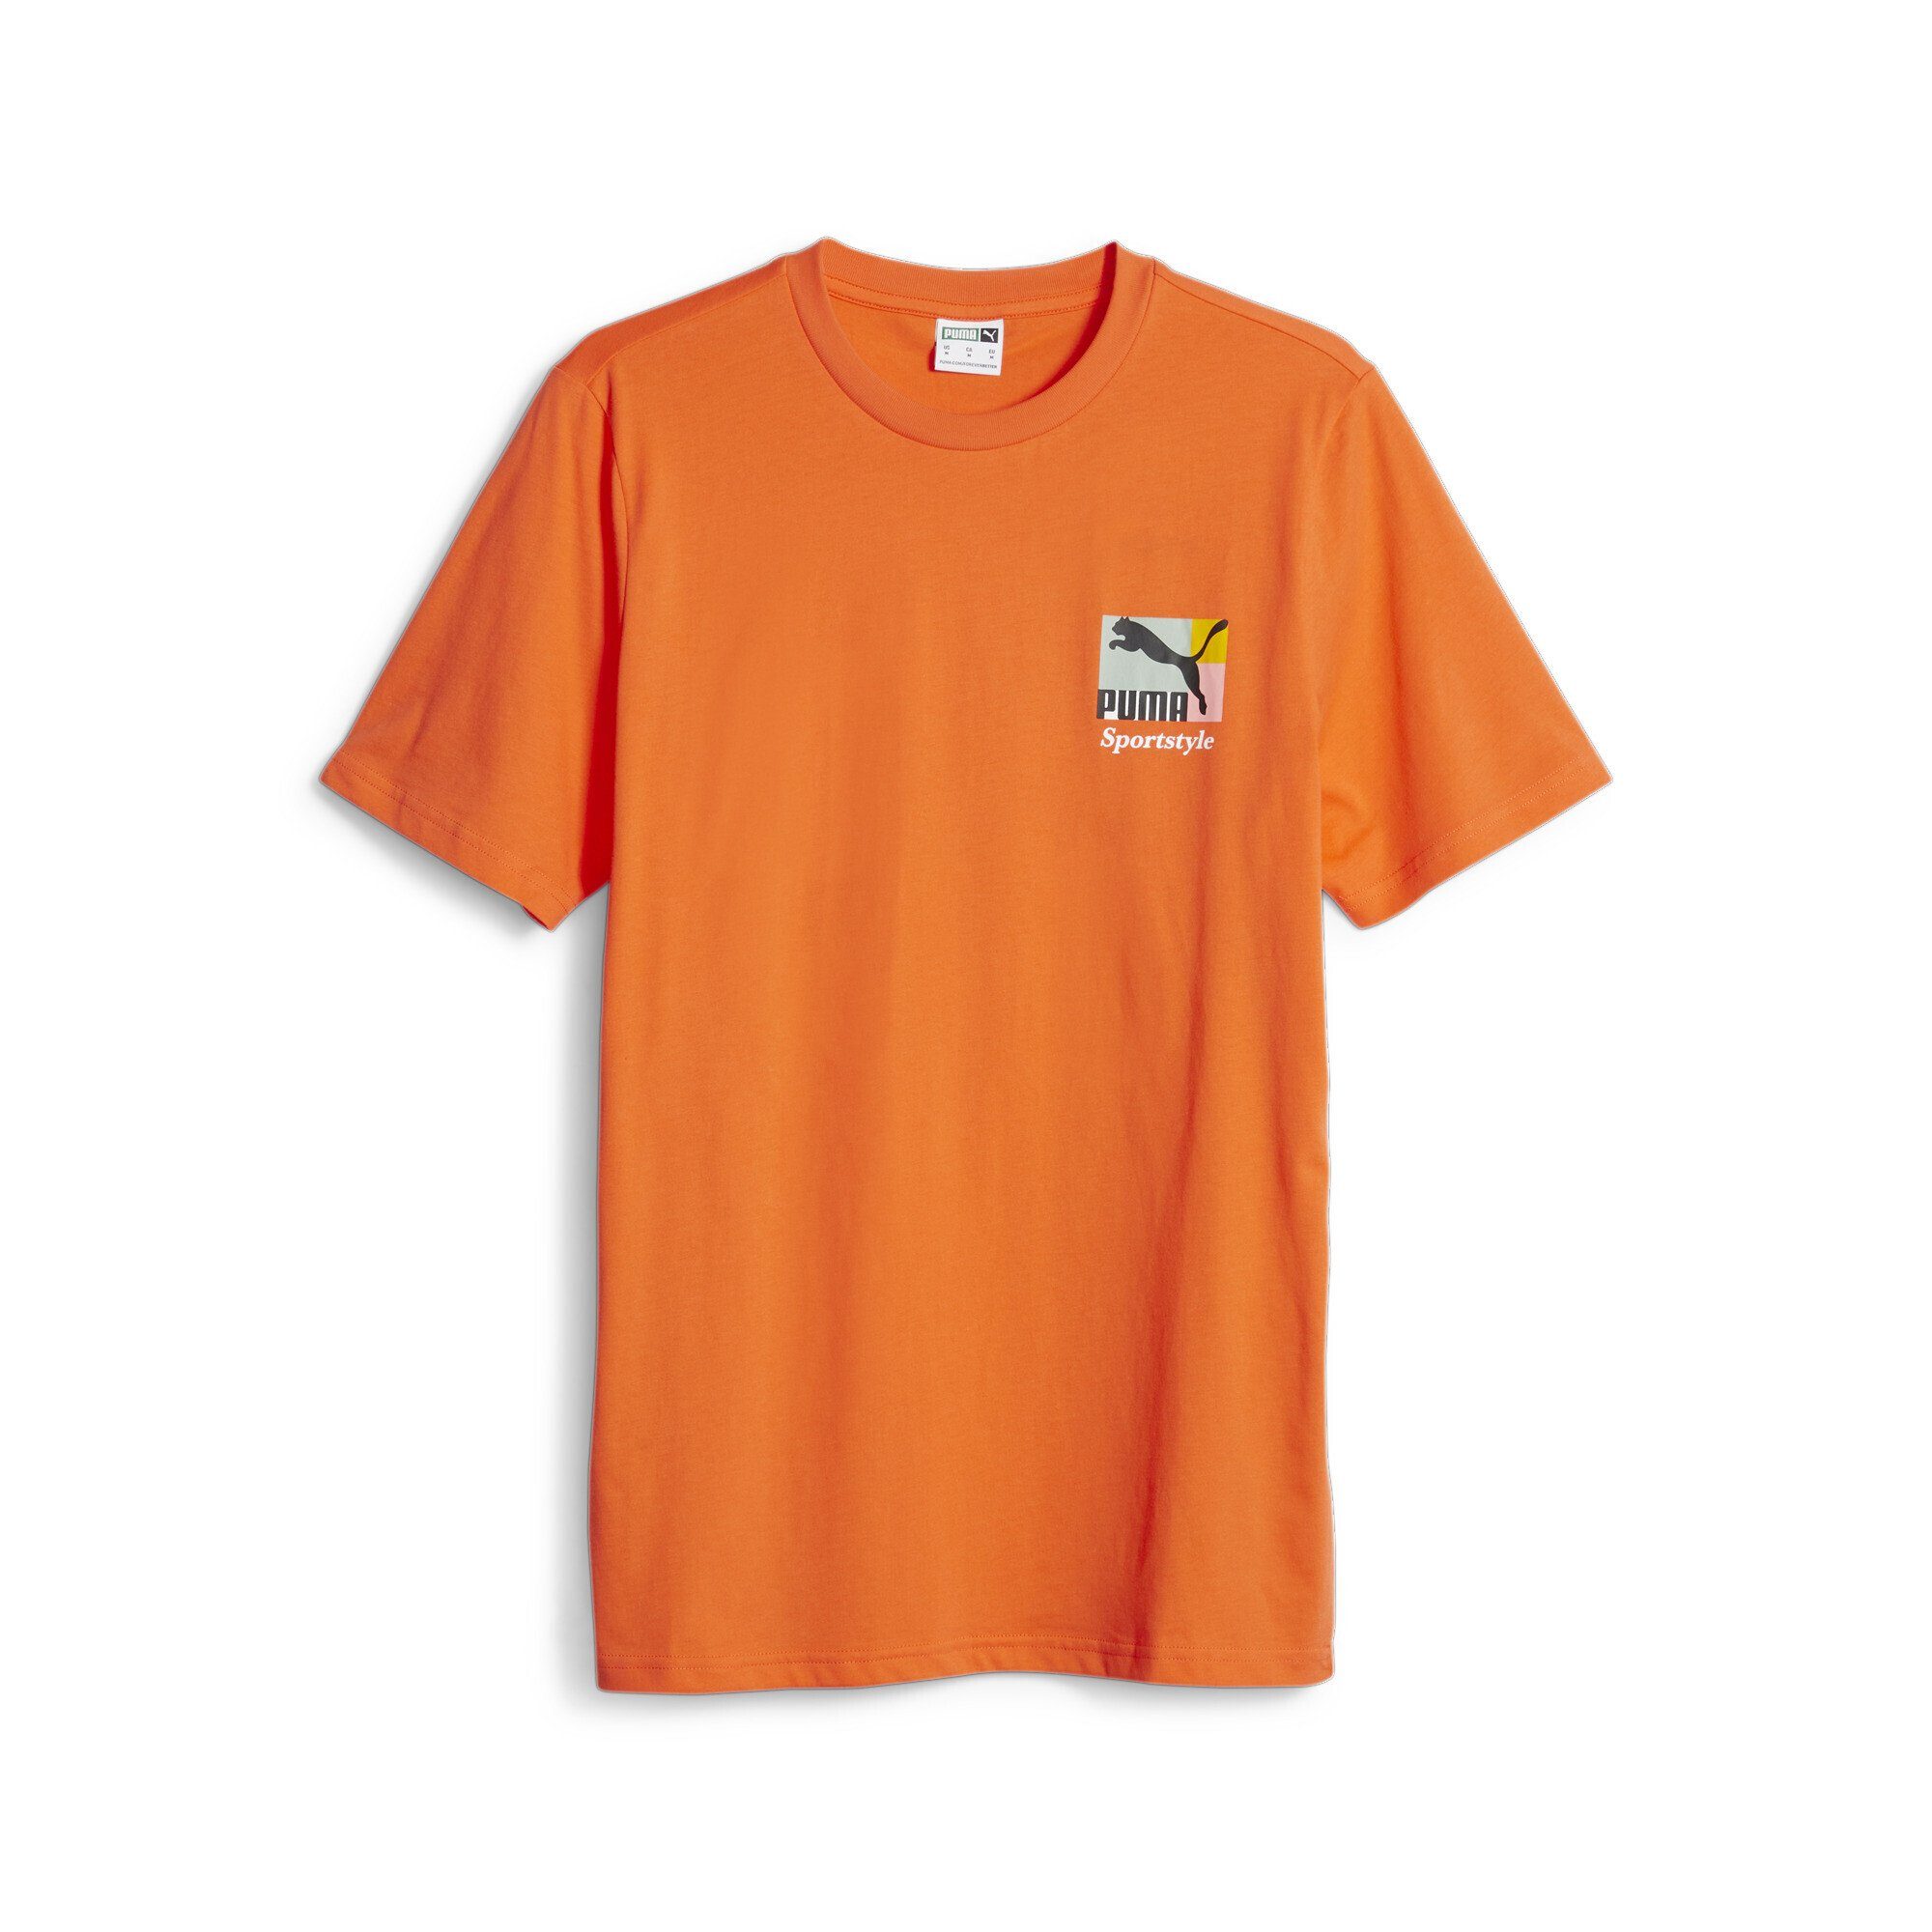 PUMA T-Shirt Vorder- Rückseite Love T-Shirt Brand Classics auf PUMA und Herren, Grafik-Print Sportstyle